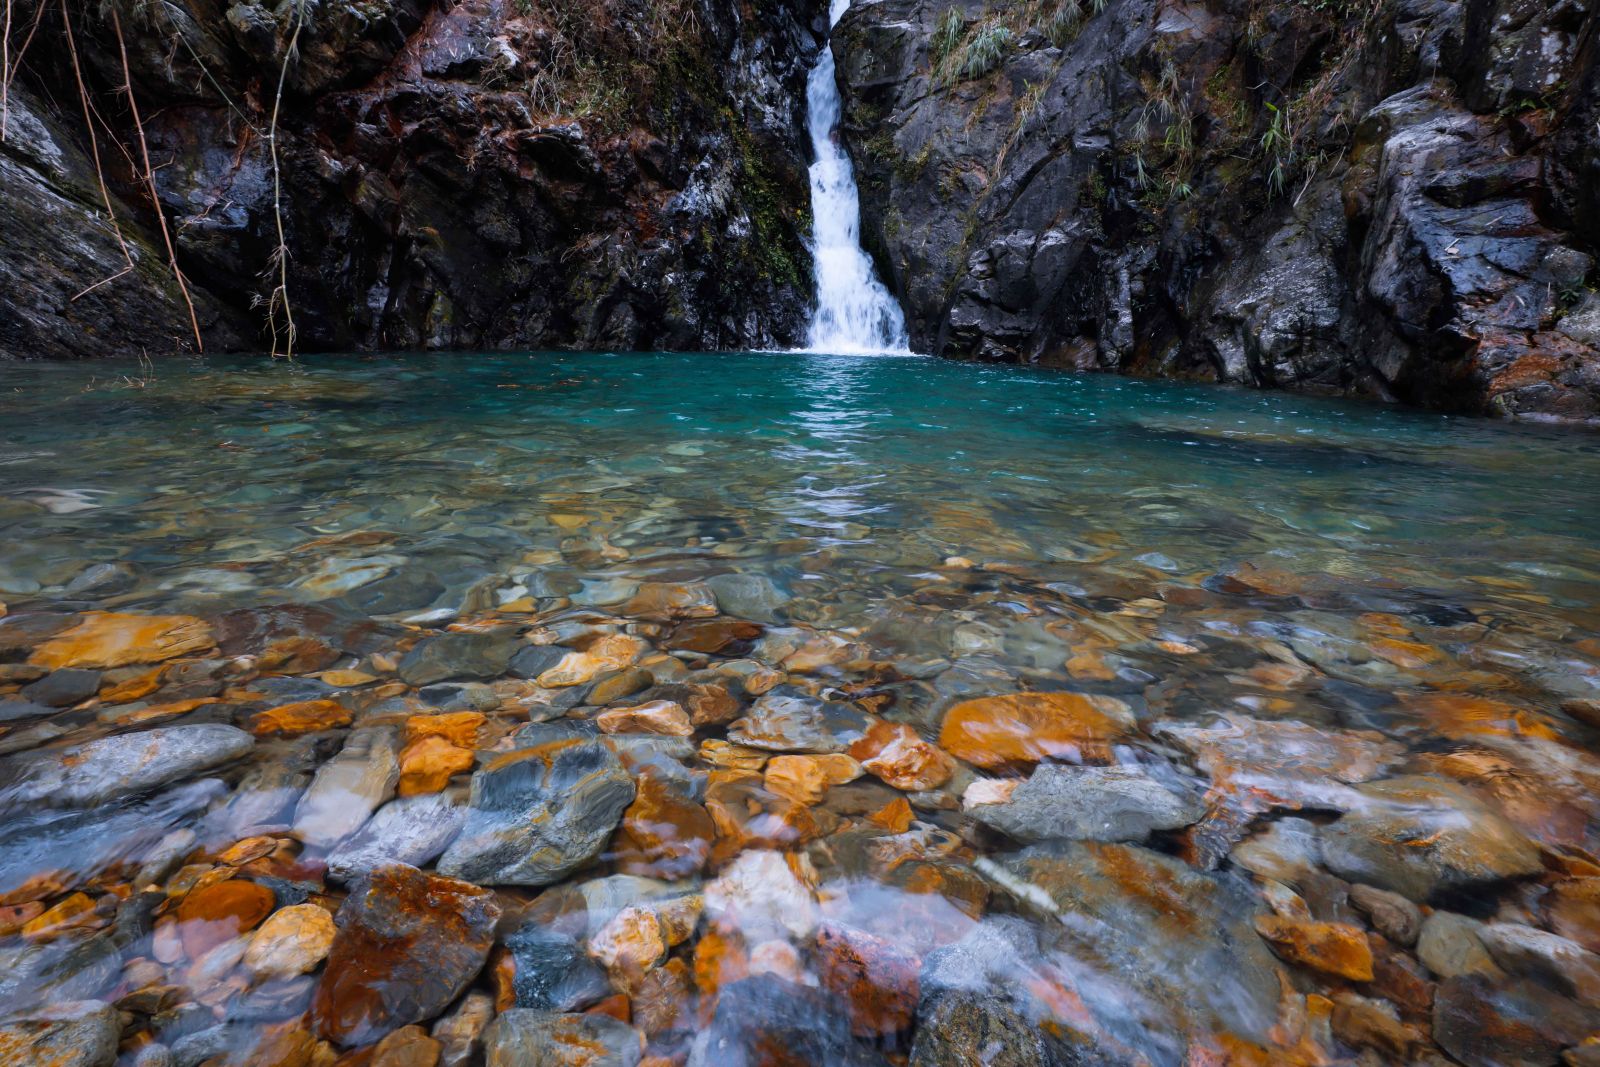 Dòng nước luồn qua những khe đá đổ xuống hủng sâu tạo nên một hồ nước nhỏ trong vắt, với xanh màu ngọc bích của nước và đá suối long lanh…